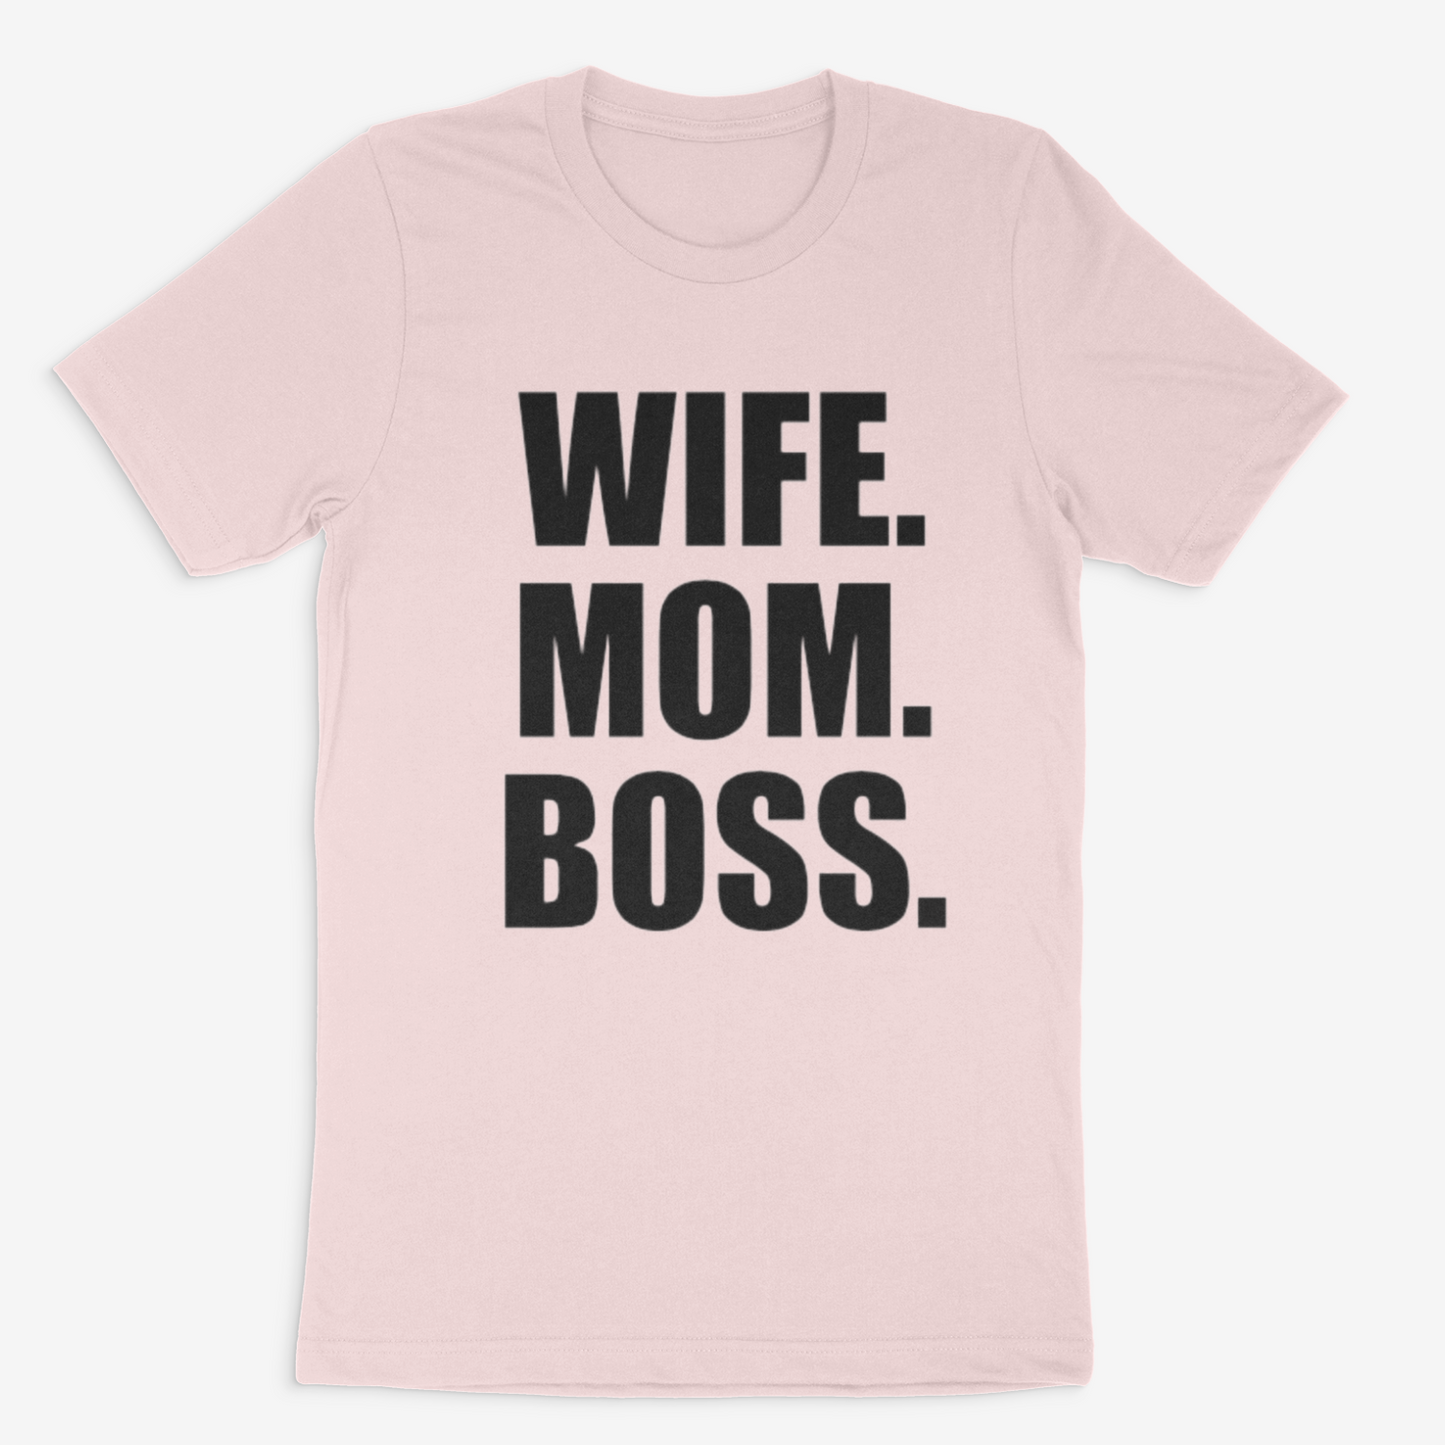 Wife. Mom. Boss Tee